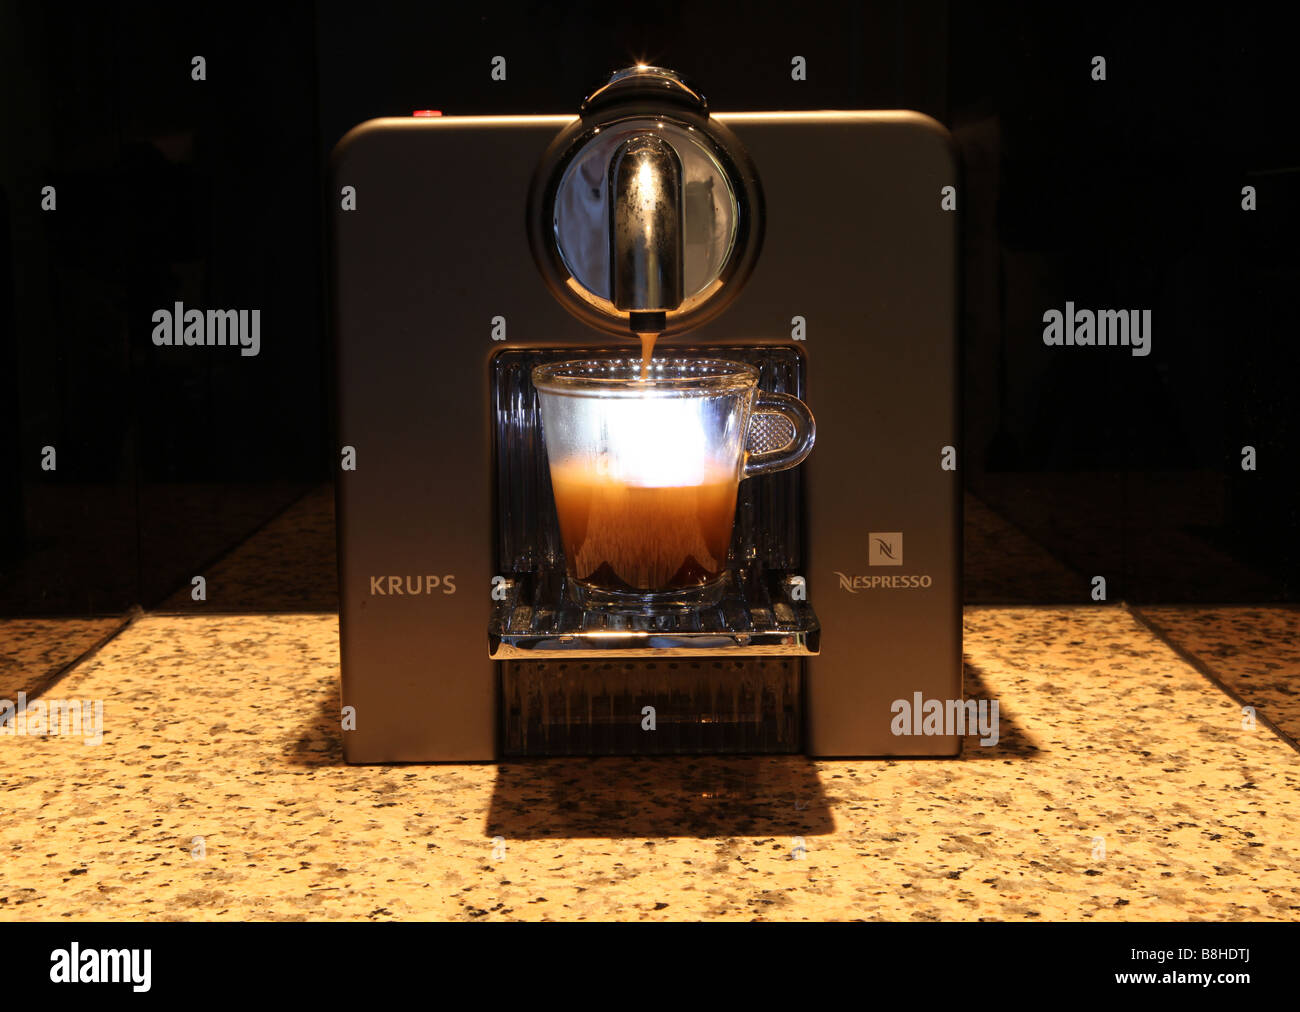 Machine à expresso Krups offrant un café chaud Banque D'Images